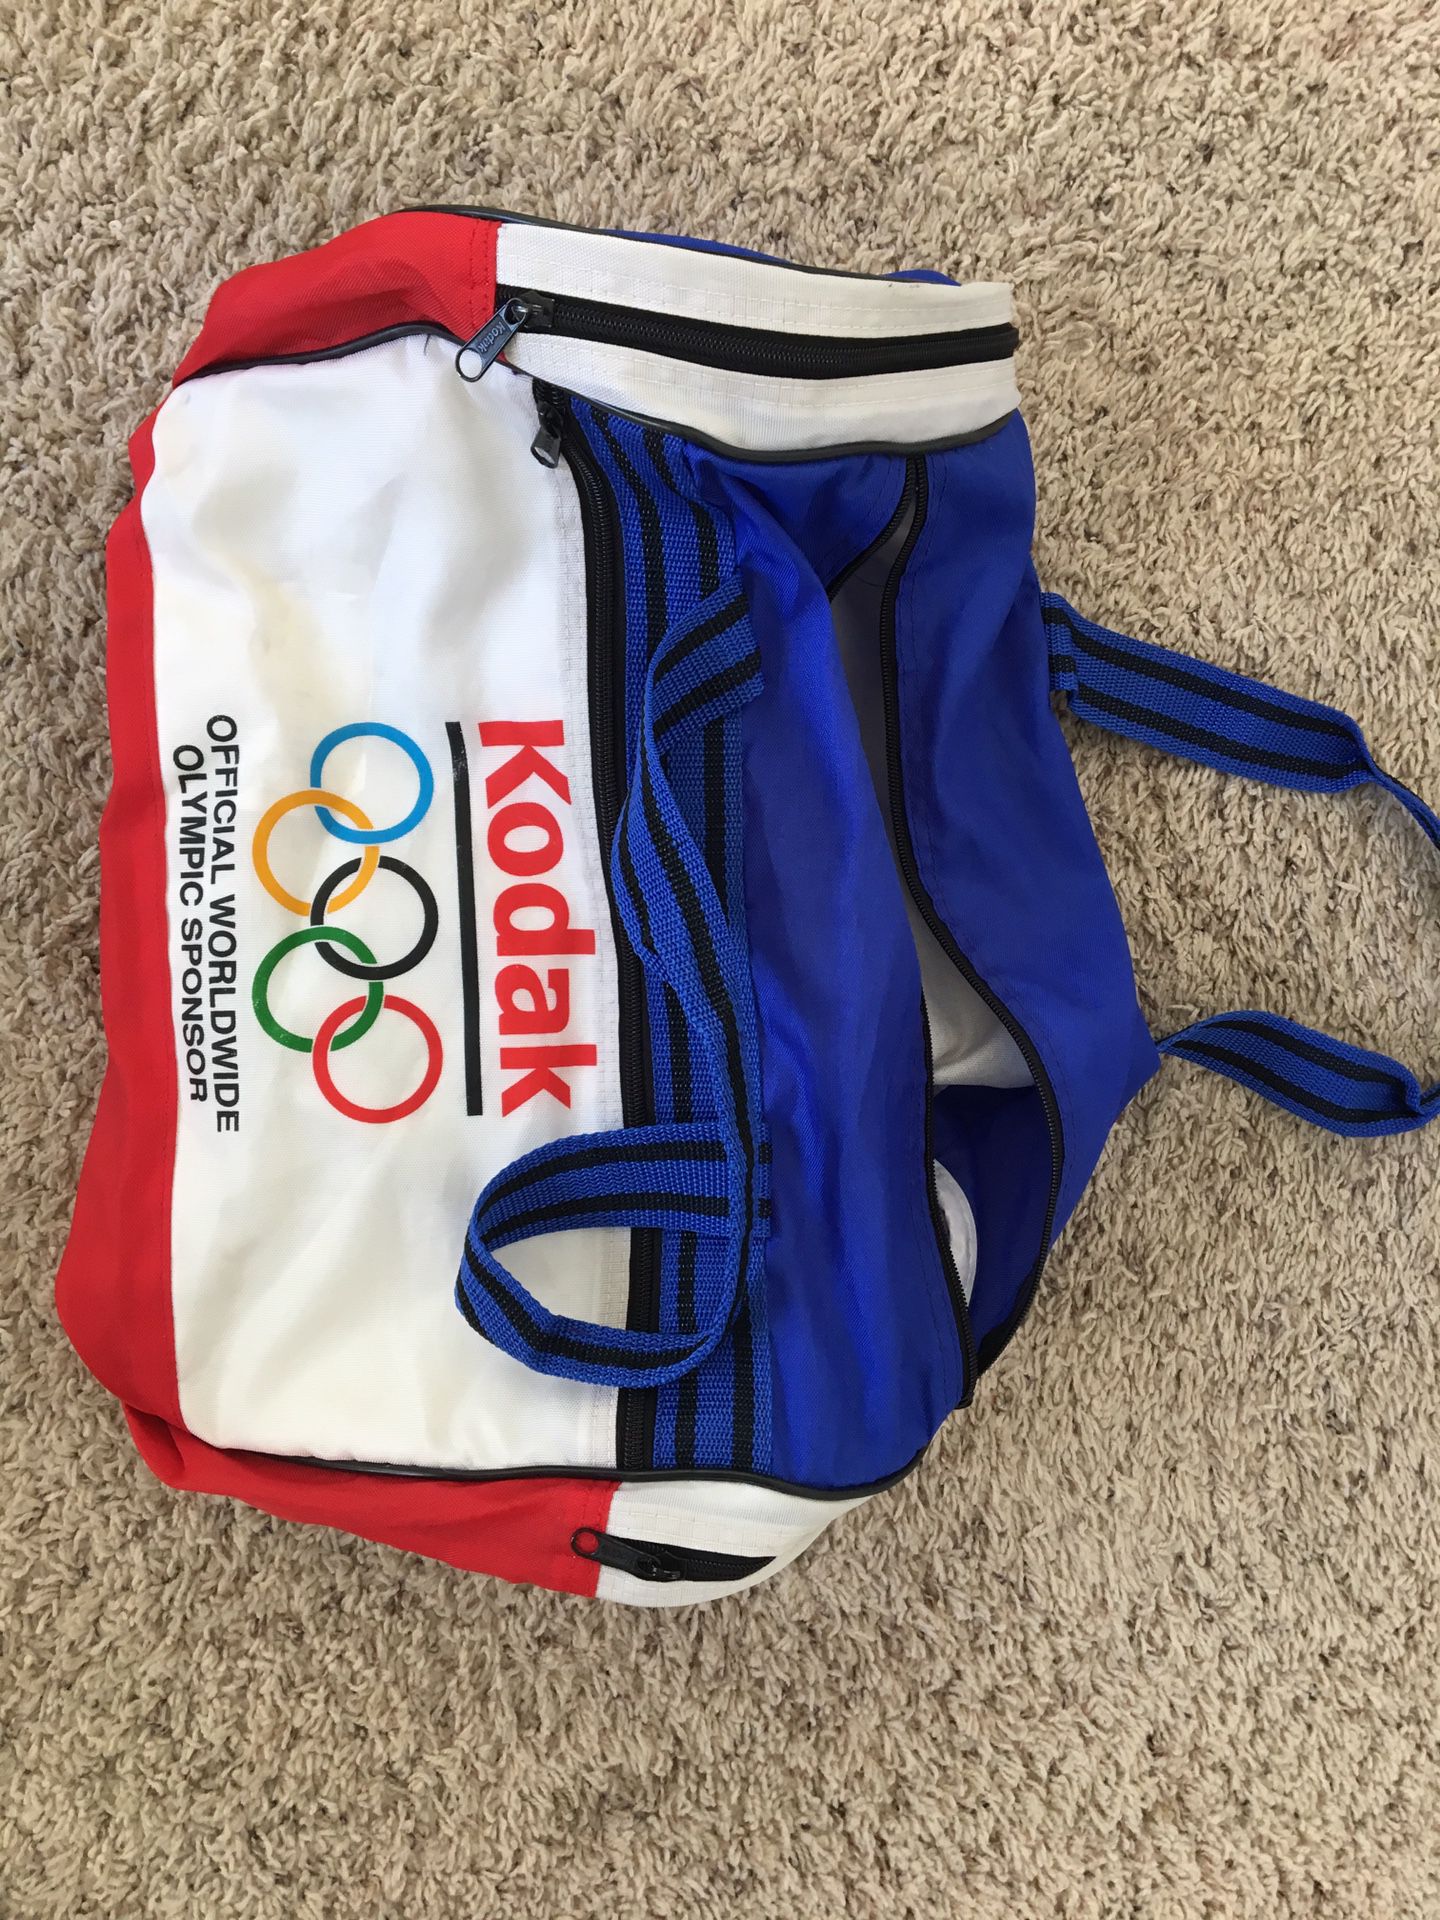 Vintage Kodak Olympics gym bag